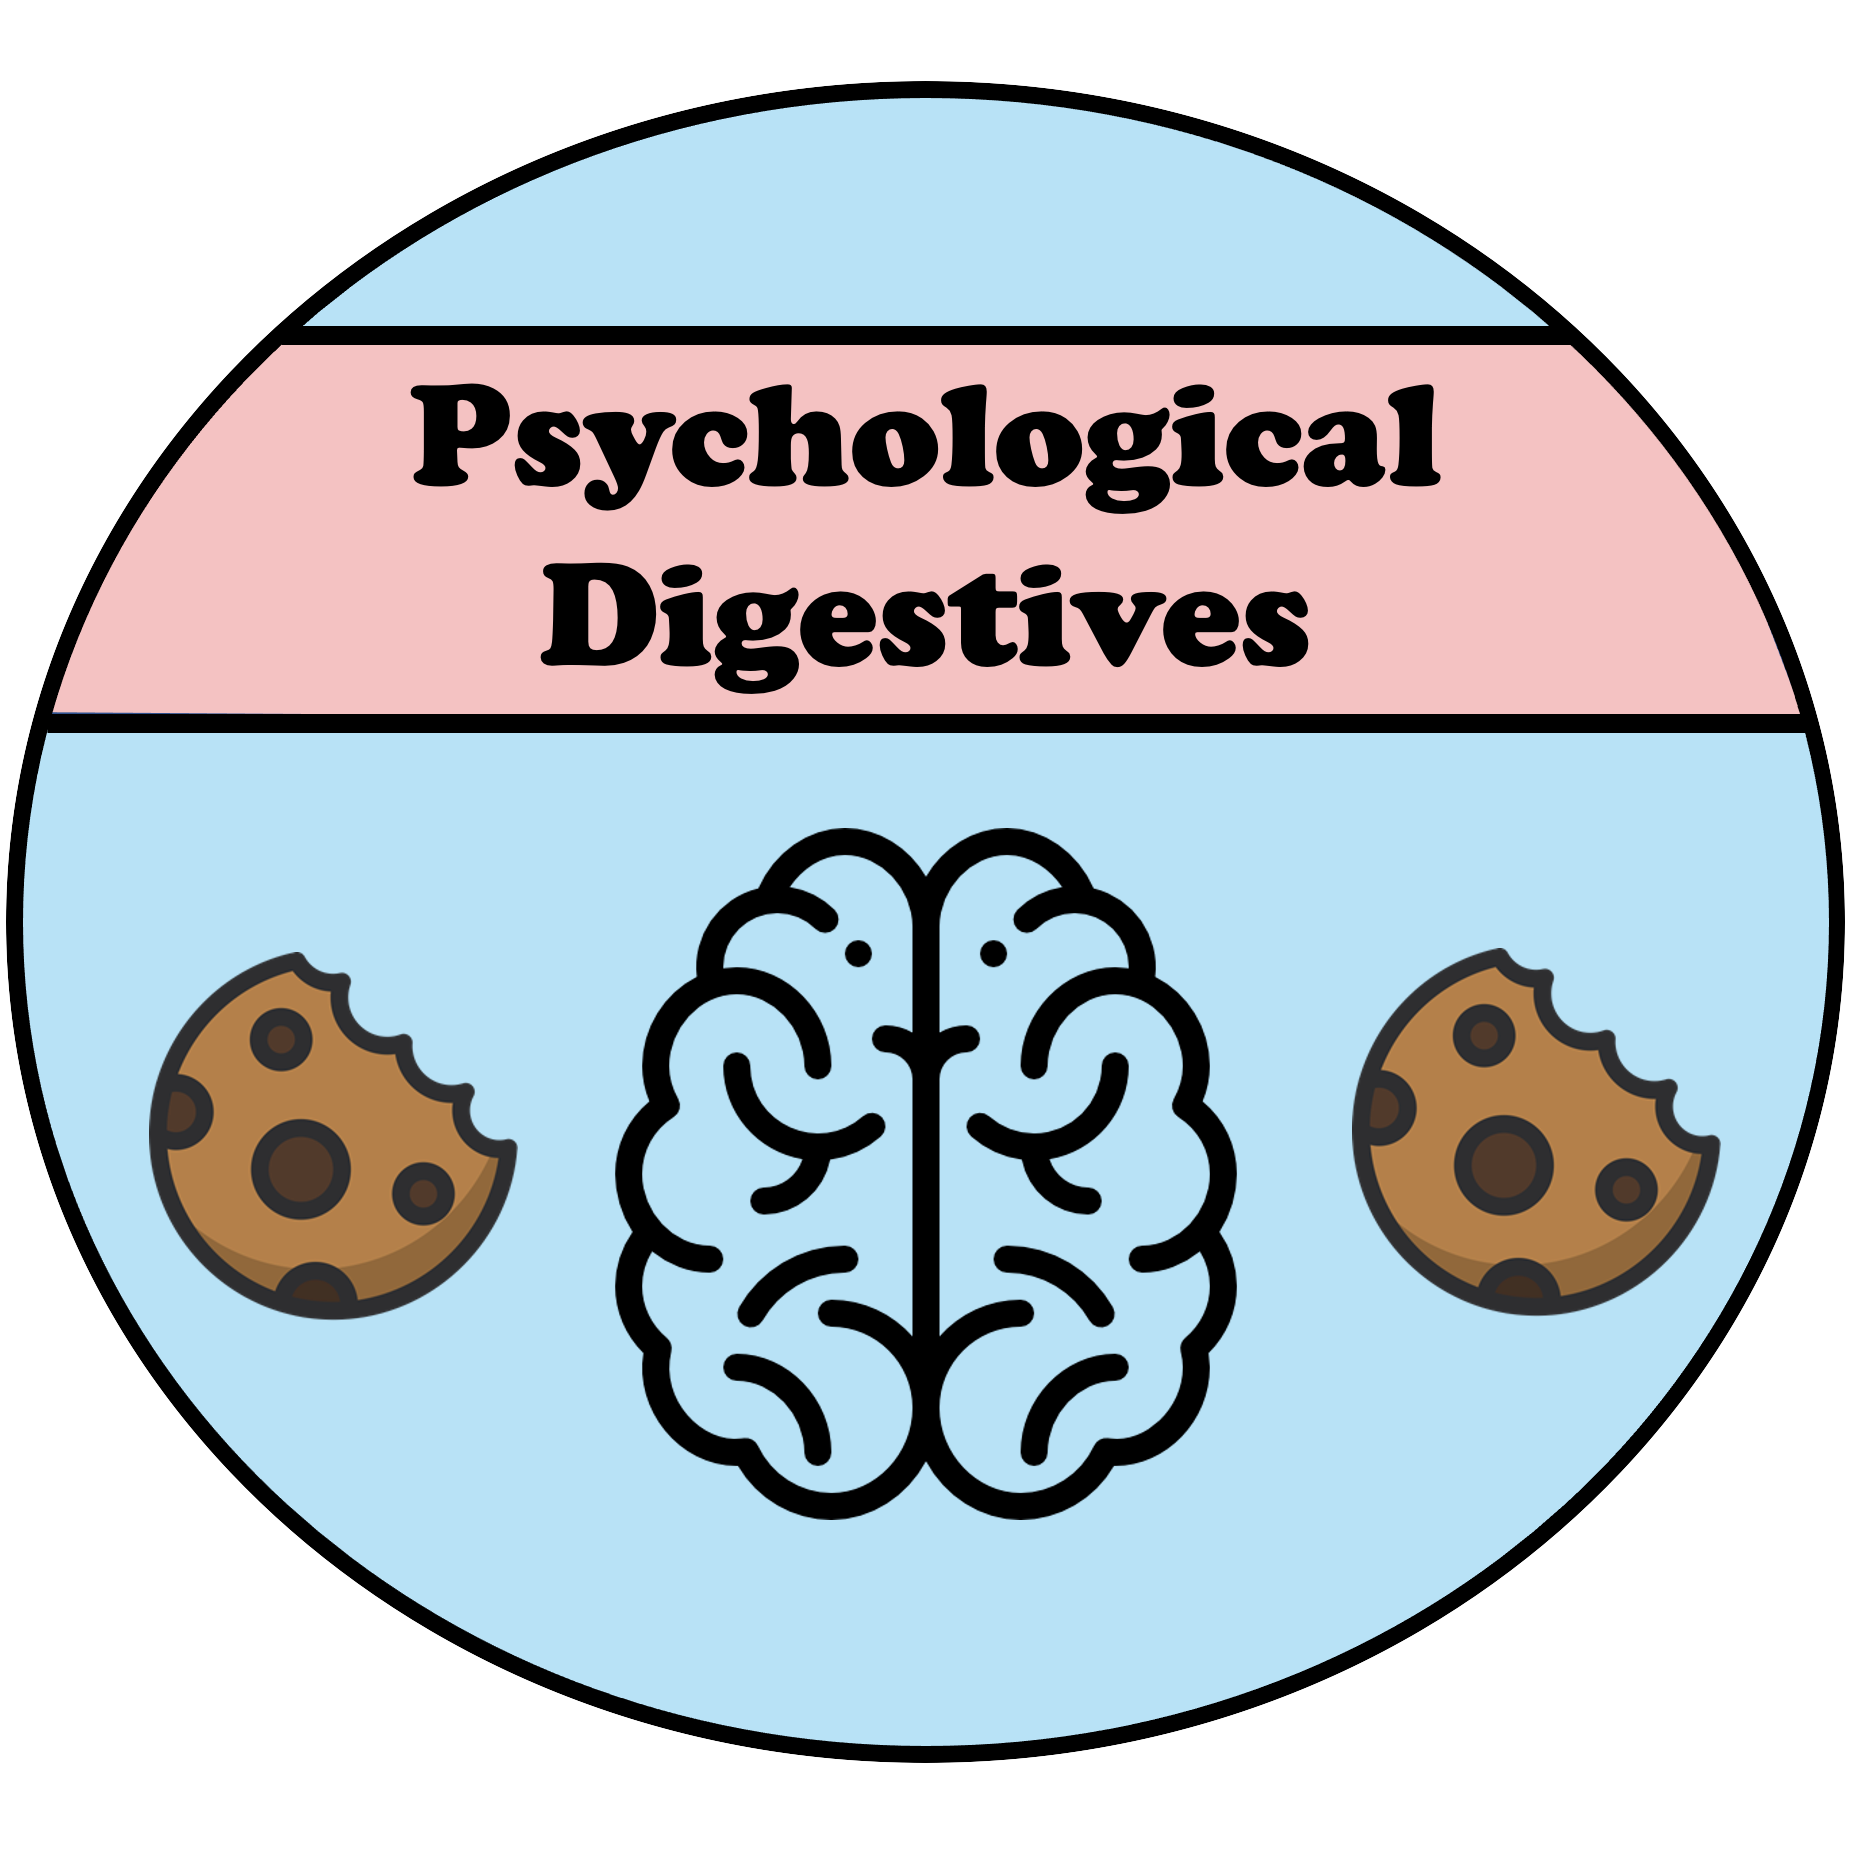 Cognitive Digestives